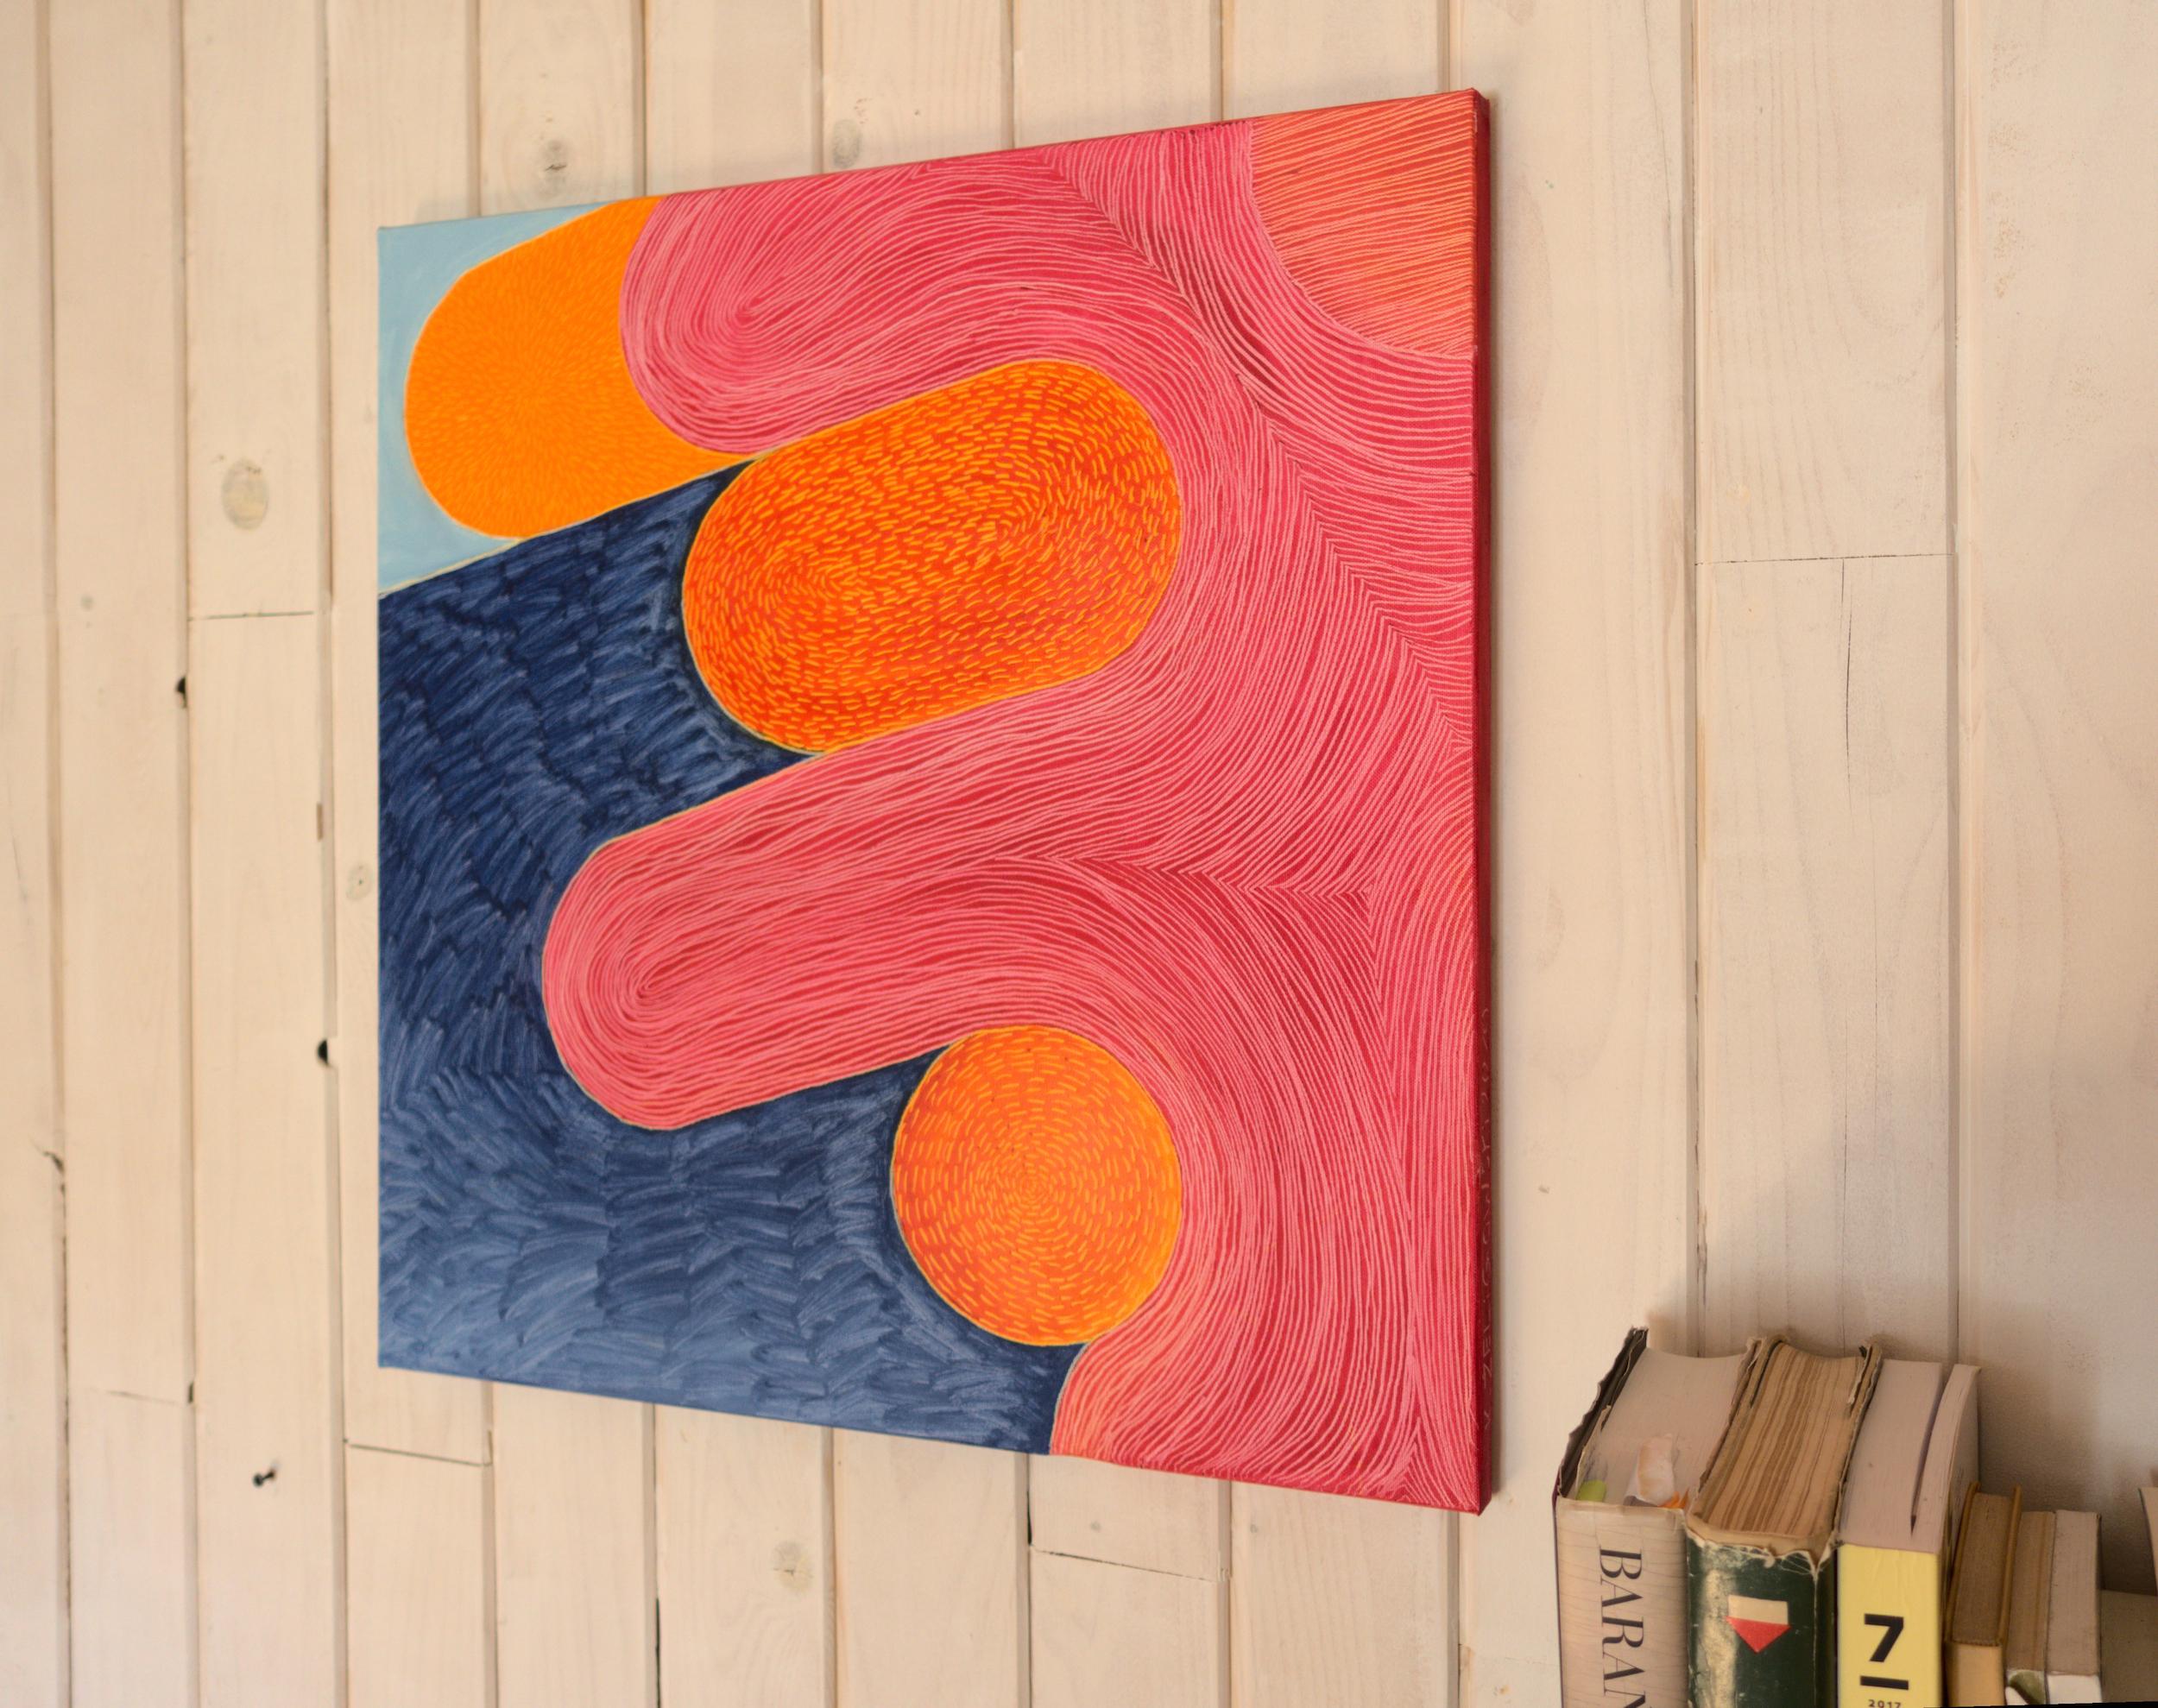 Mating In The Orange Bay – zeitgenössisches abstraktes Ölgemälde, fröhlich, farbenfroh – Painting von Jakub Żeligowski